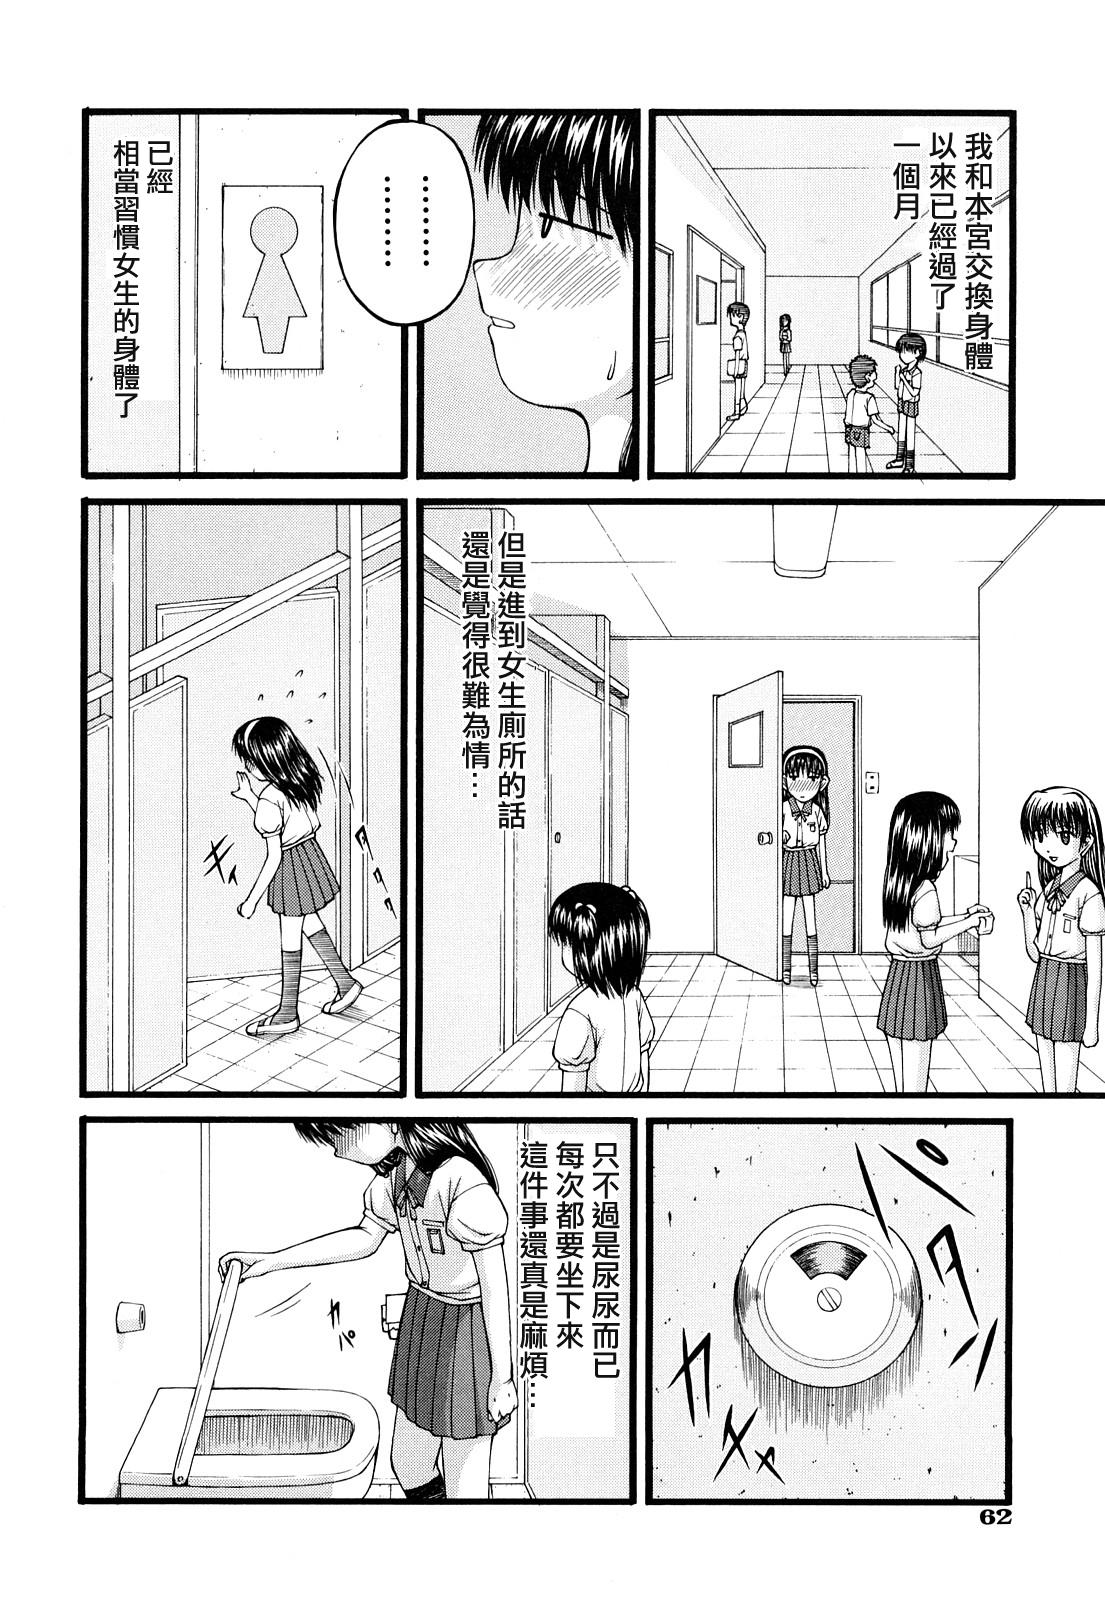 Infiel Futari no Himitsu Gonzo - Page 4